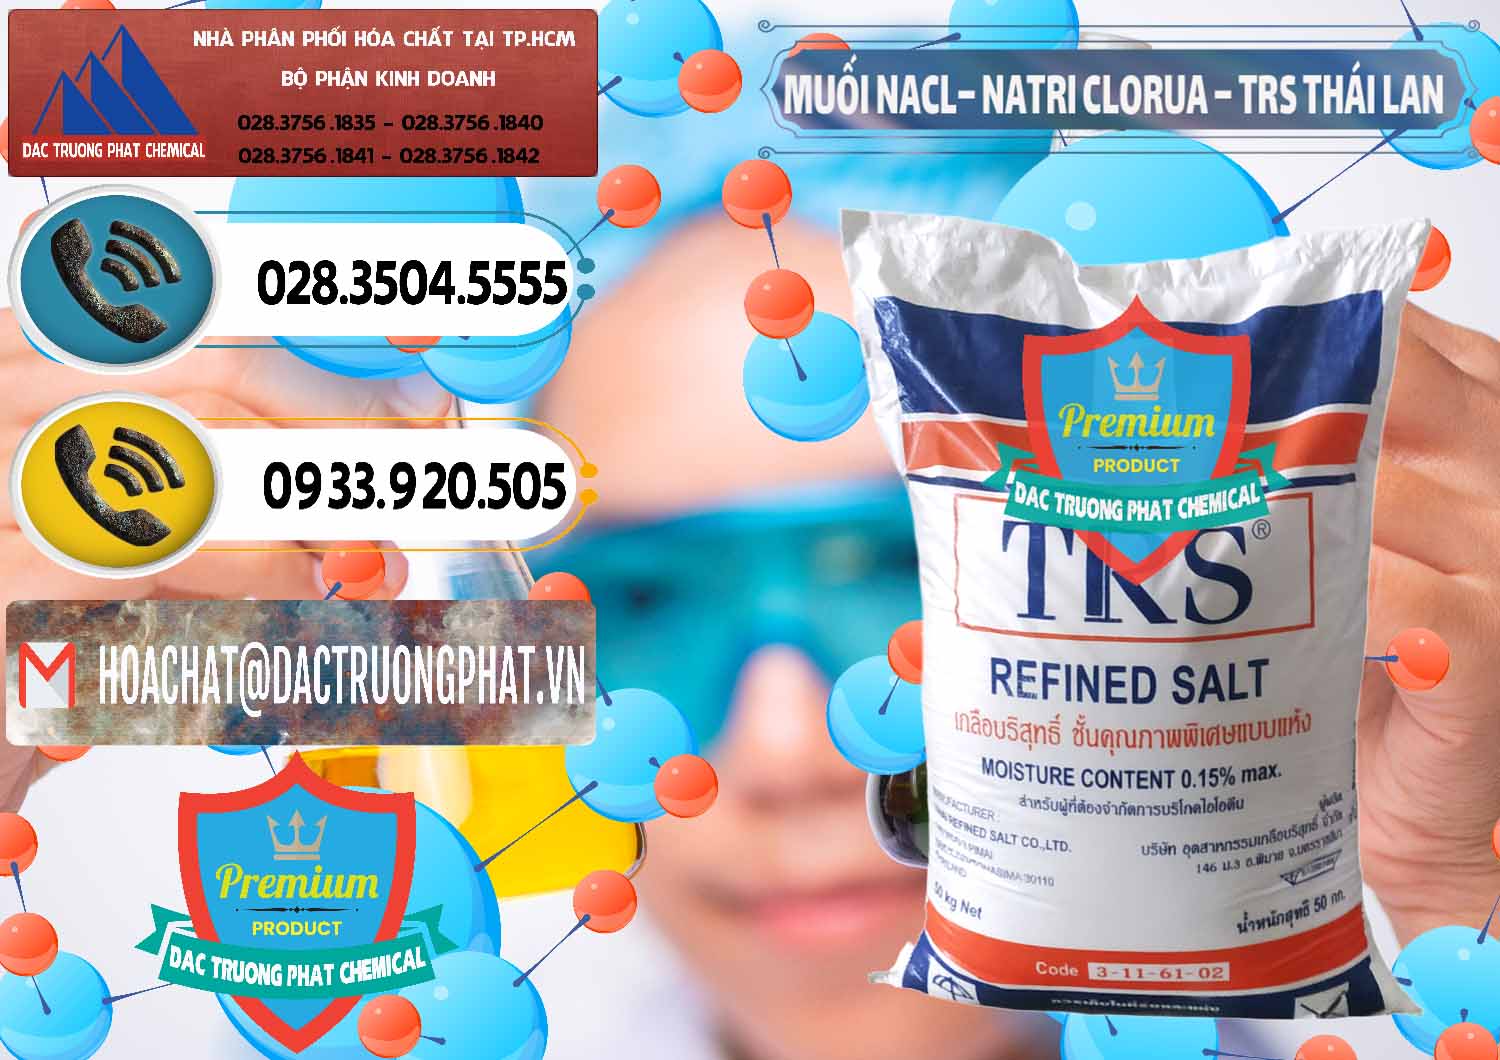 Đơn vị bán - phân phối Muối NaCL – Sodium Chloride TRS Thái Lan - 0096 - Cty phân phối - cung cấp hóa chất tại TP.HCM - hoachatdetnhuom.vn